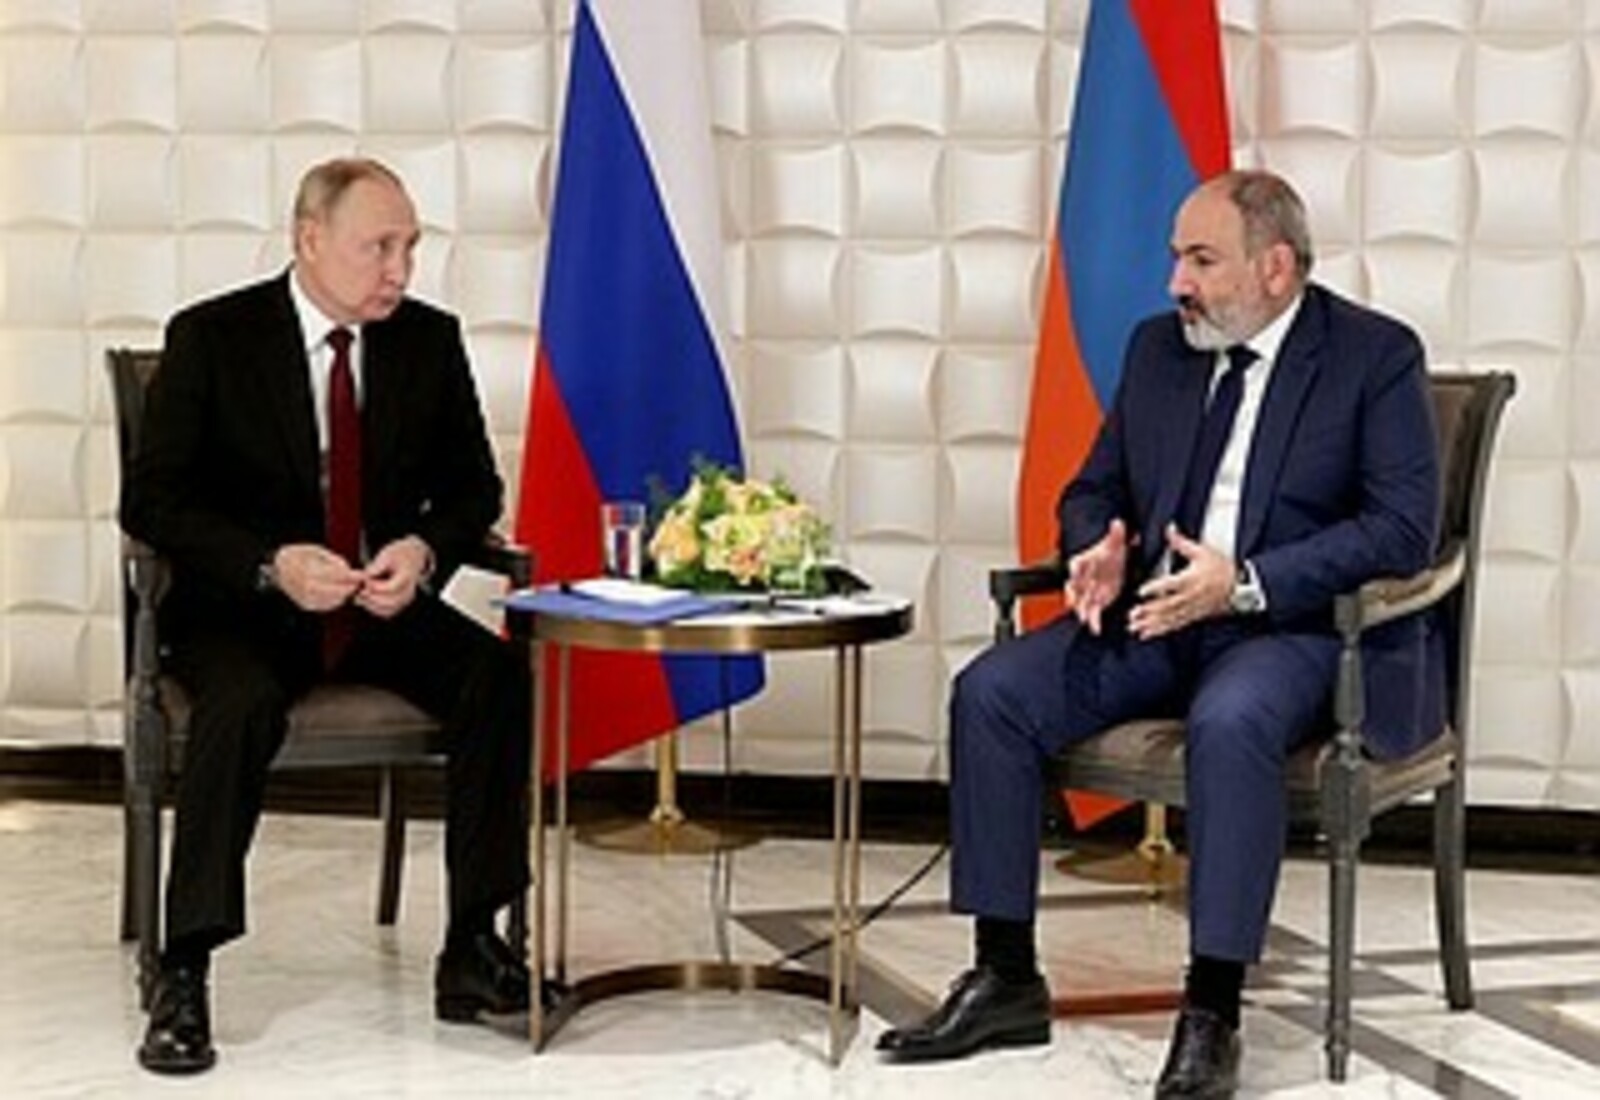 Әрмәнстан Премьер- министры Николо Пашинян менән эшлекле әңгәмә